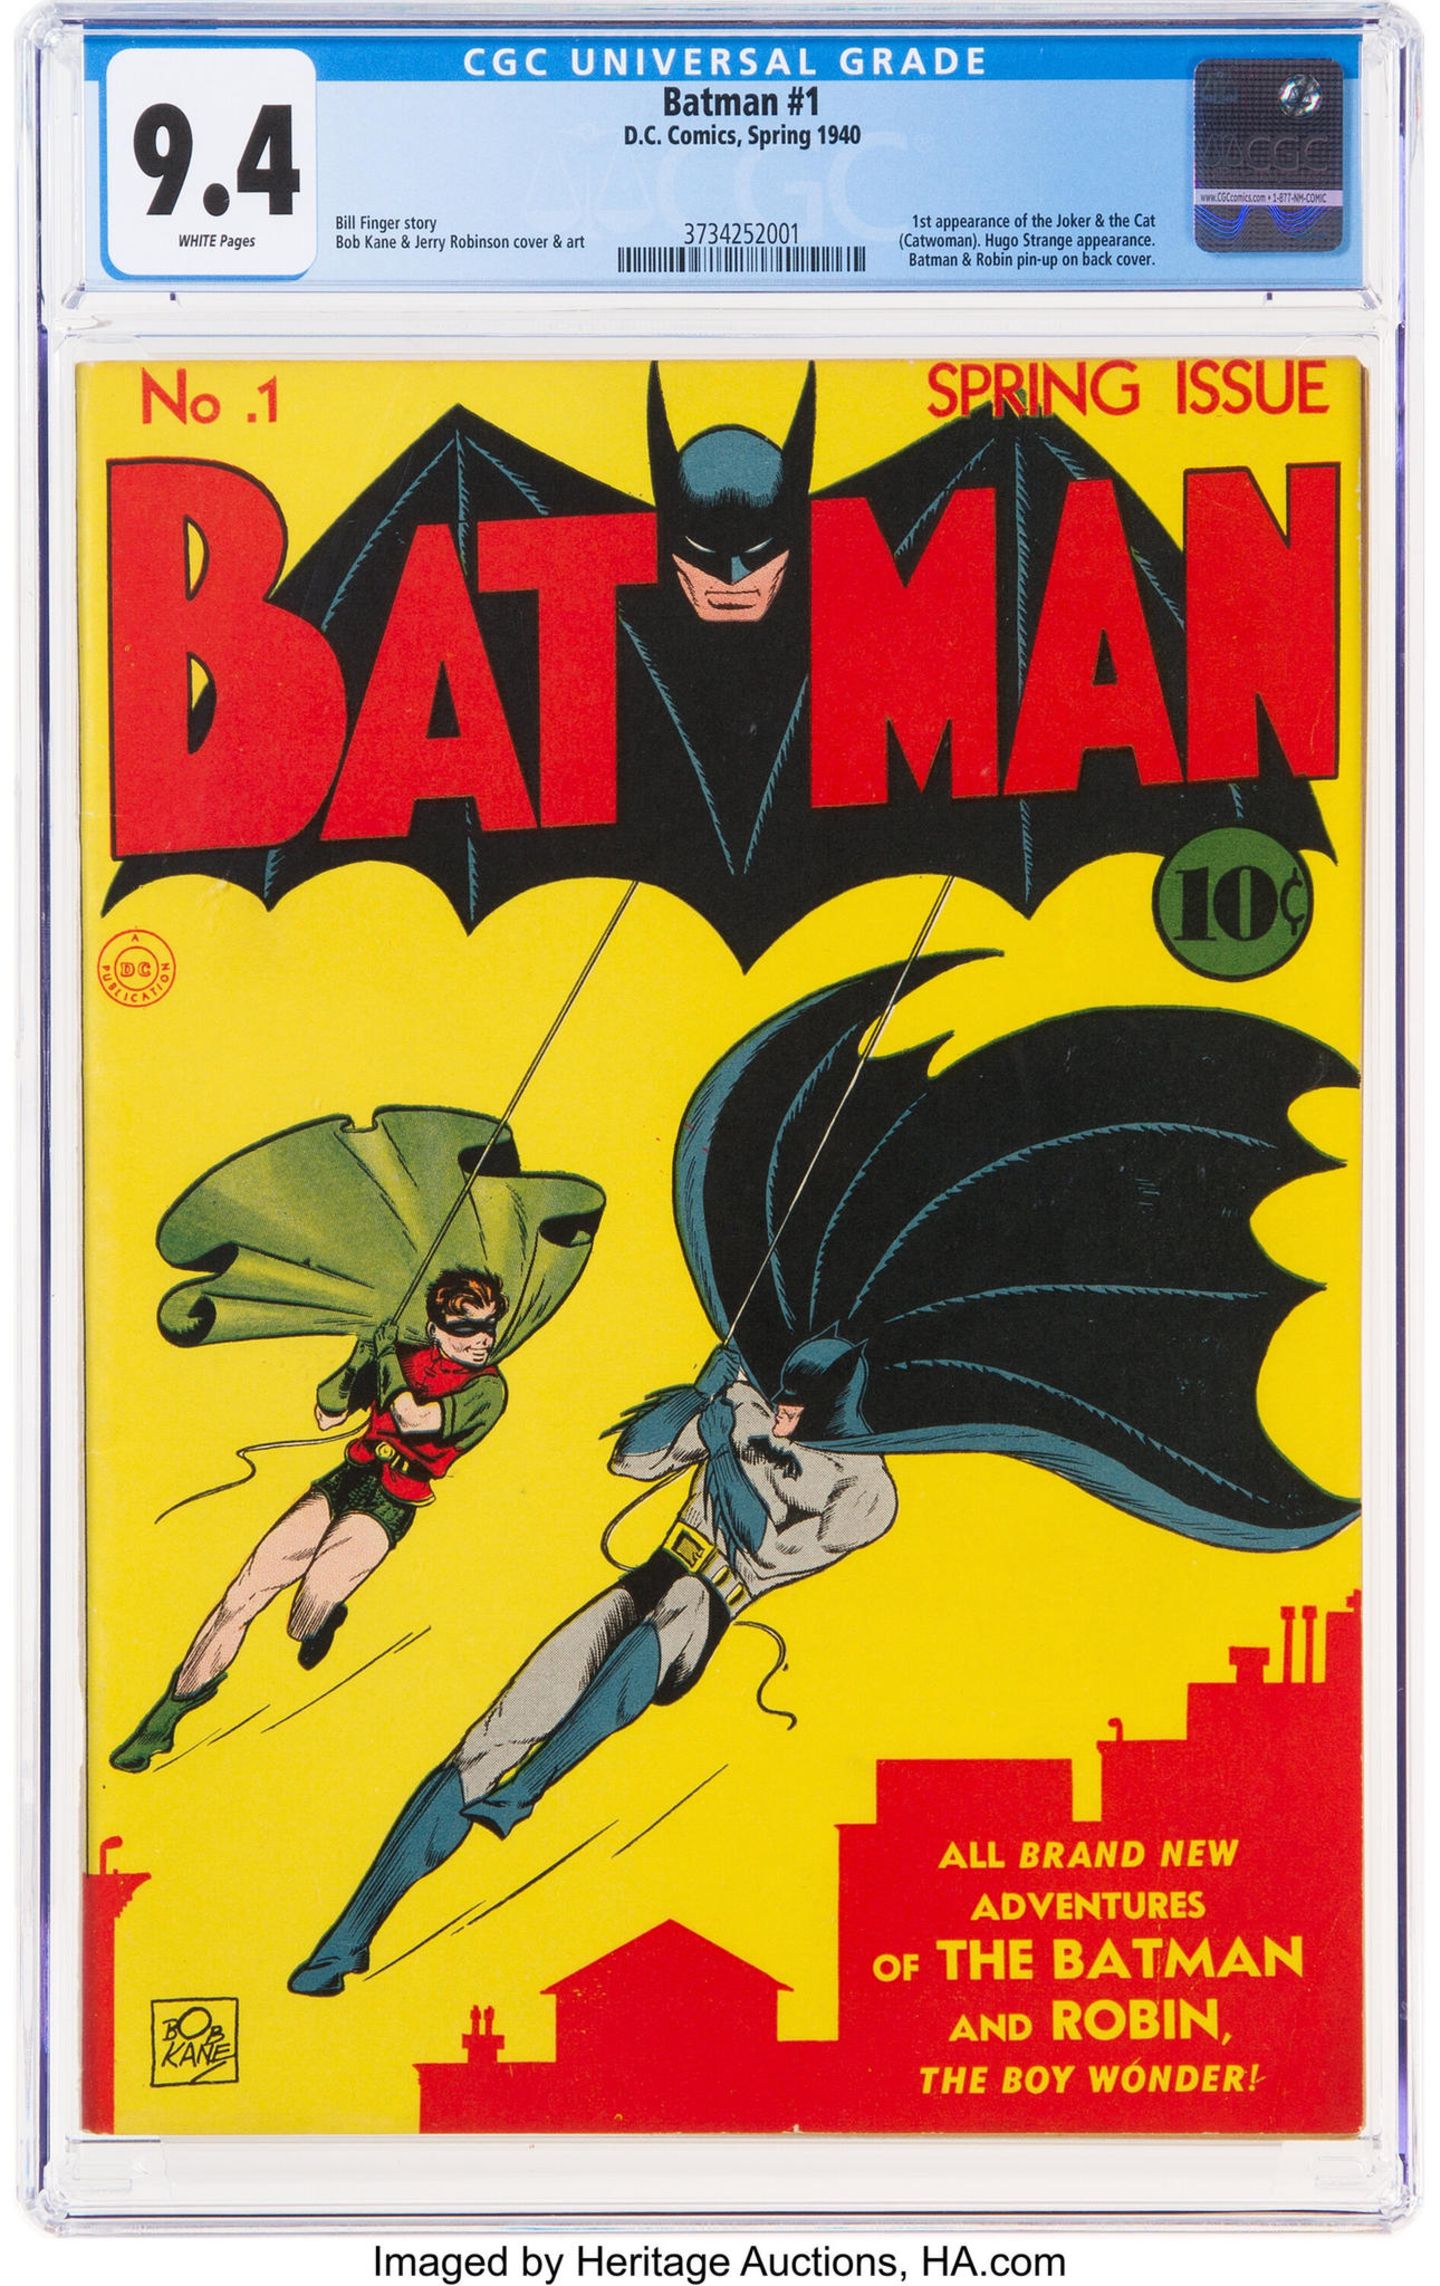 Das Batman-Comic-Heft aus dem Jahr 1940